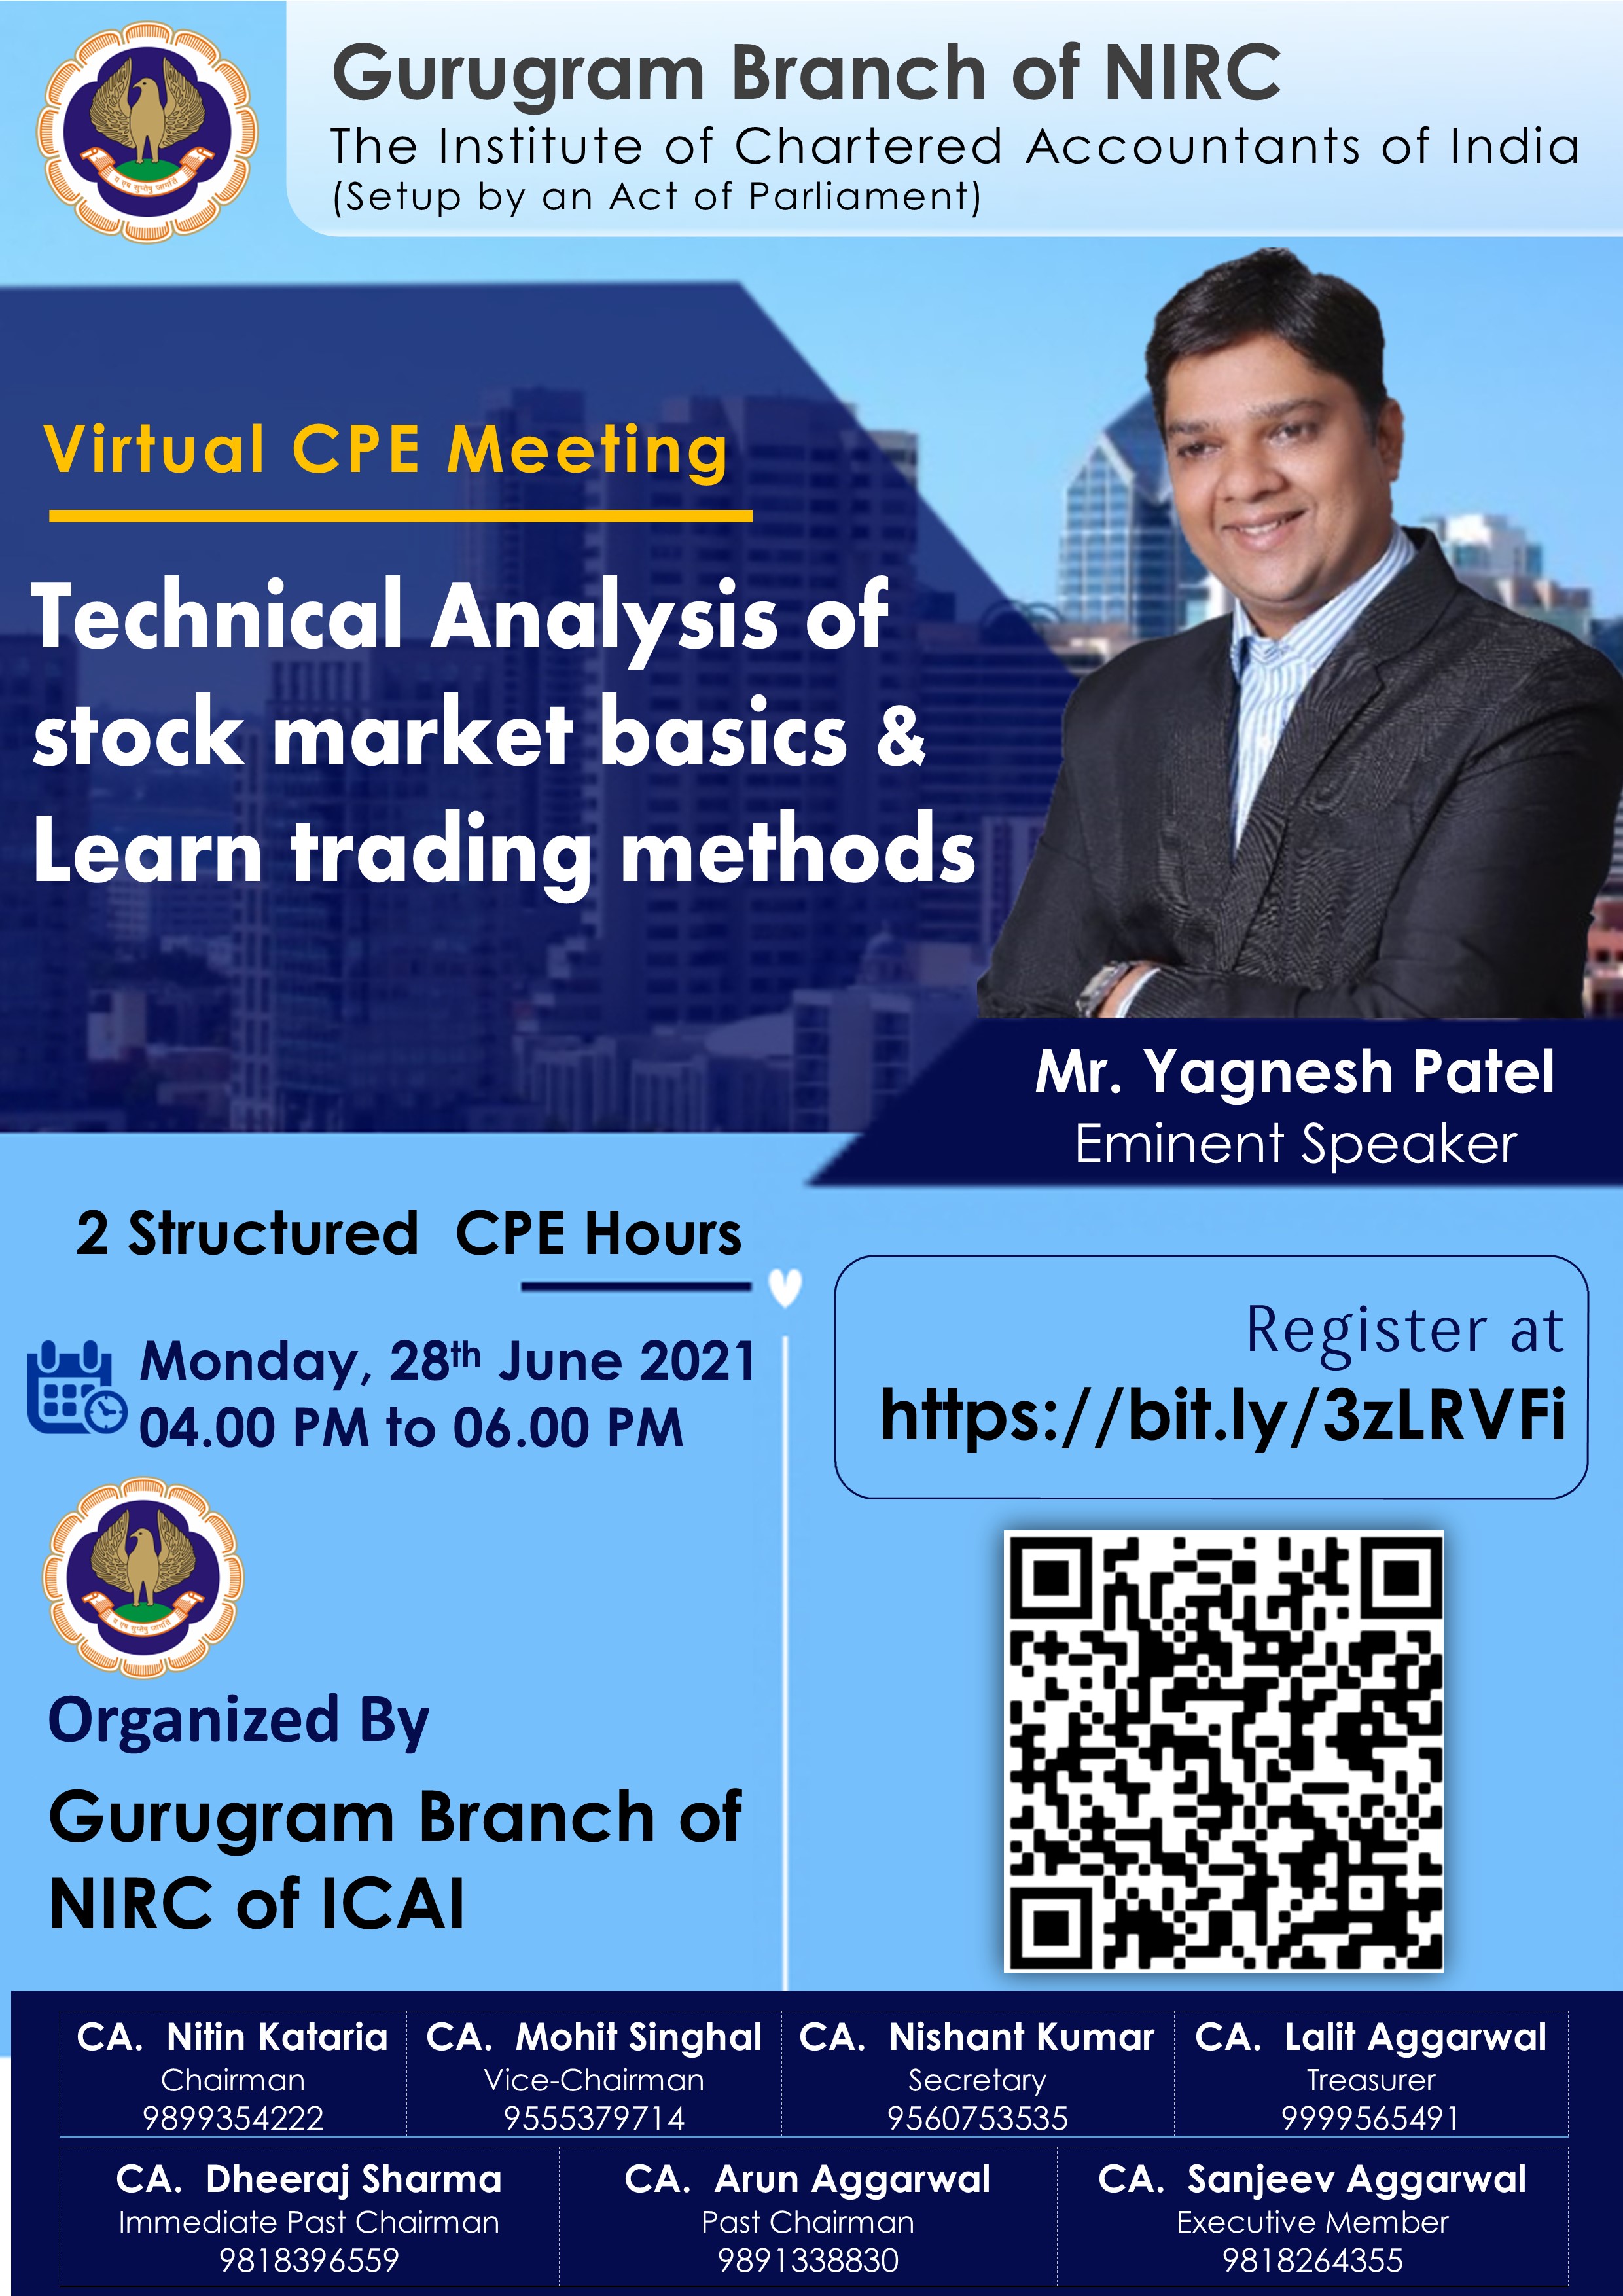 VCM on Technical analysis of stock market basics & learn trading methods